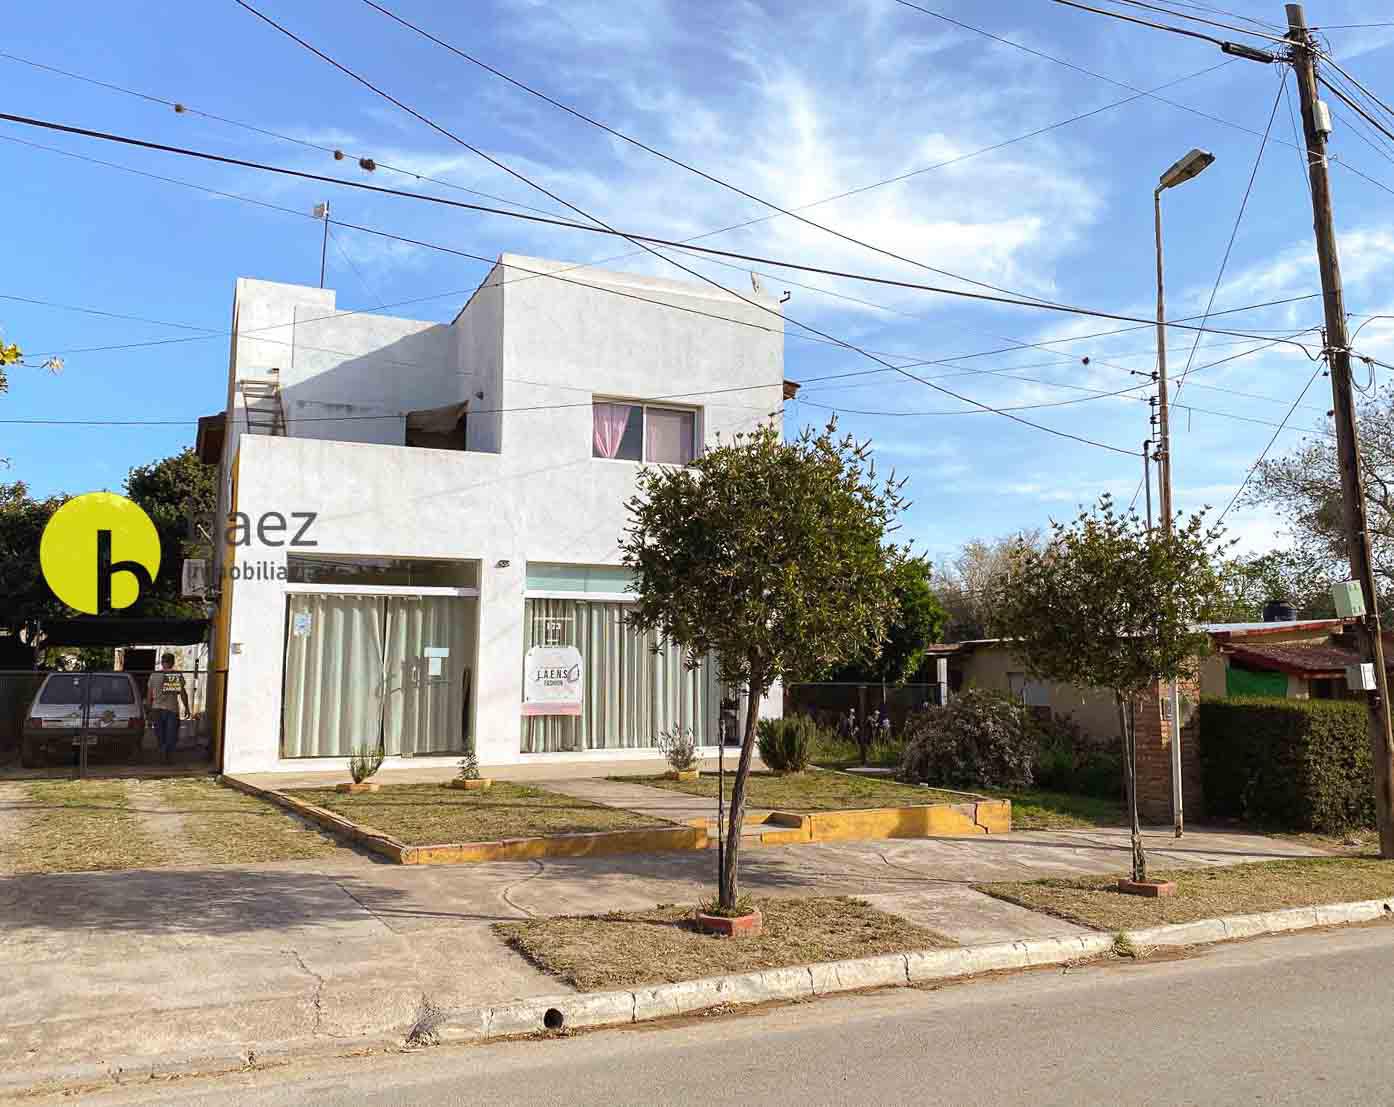 Casa en Barranca Colorada Merlo.